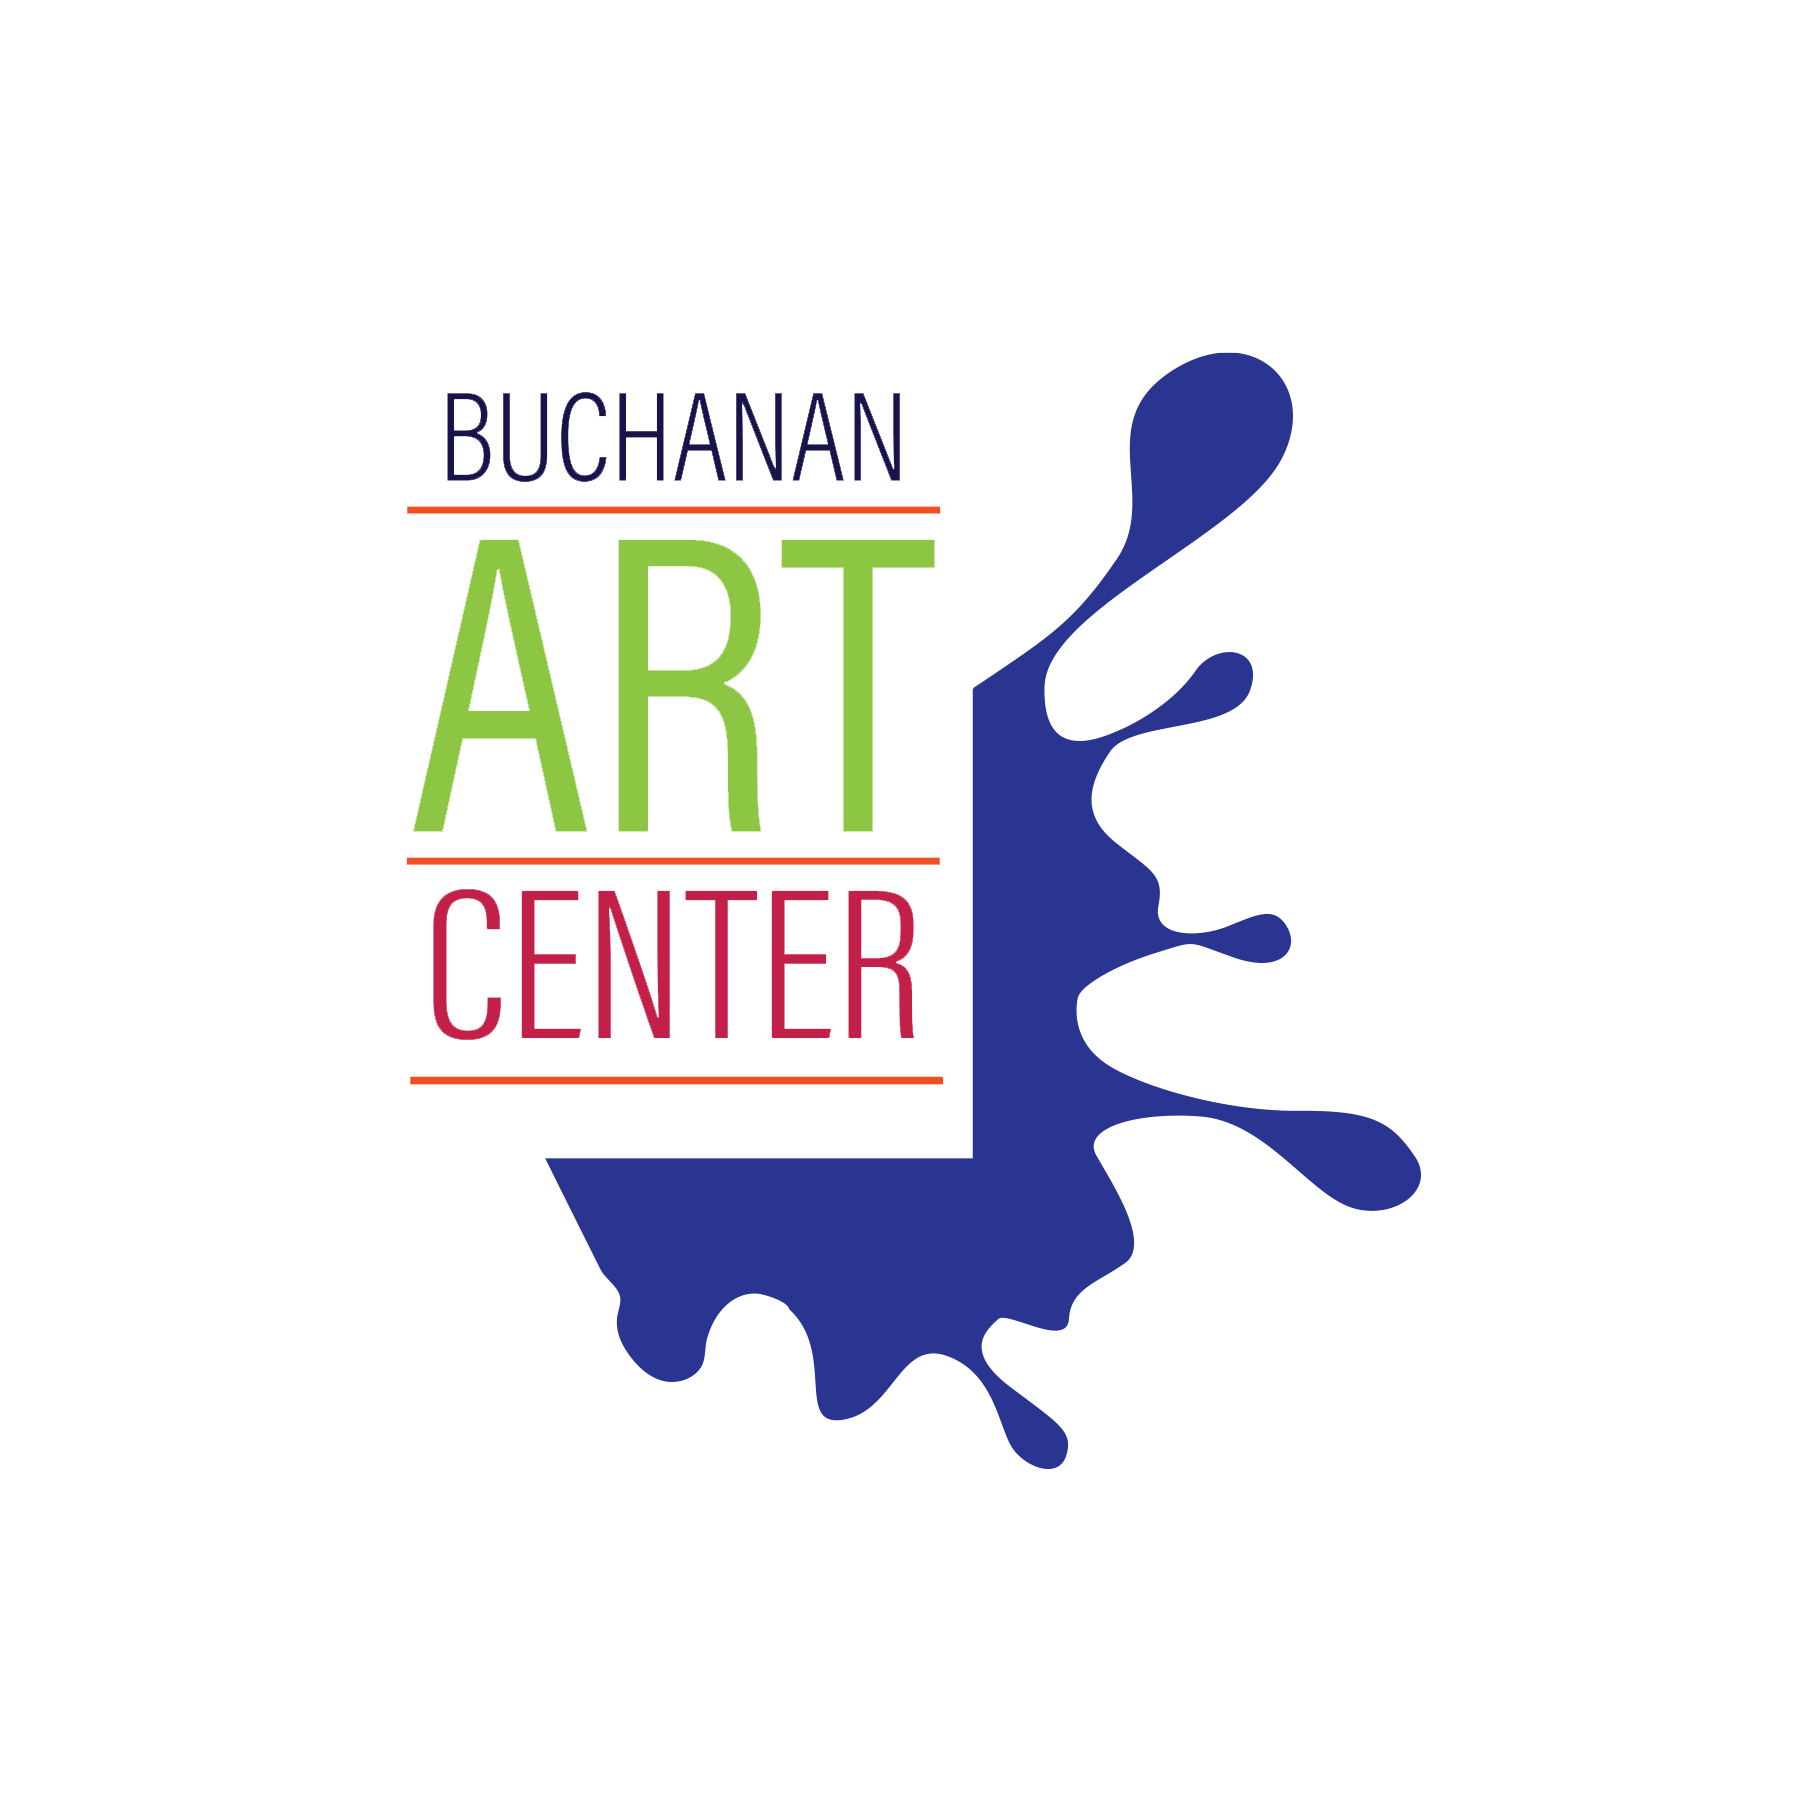 Buchanan Art Center